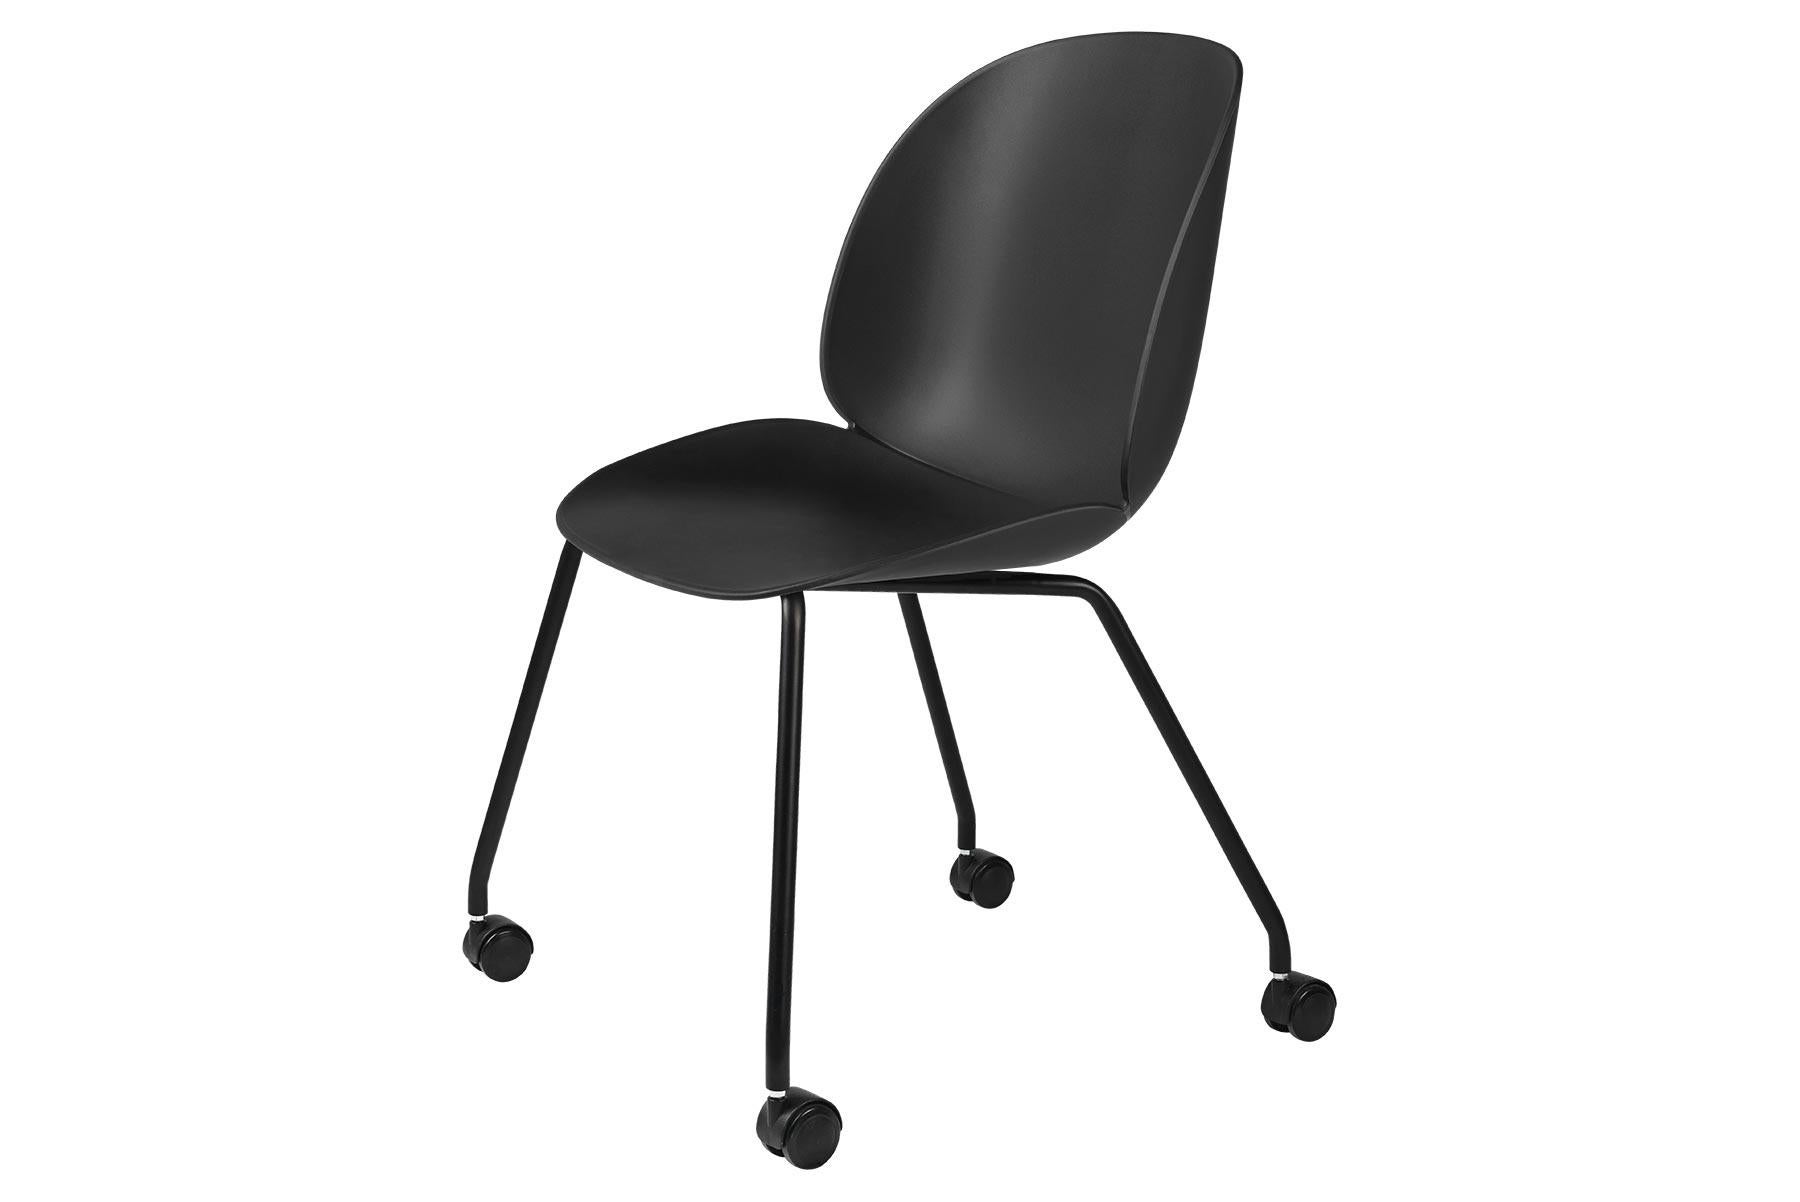 Mit der Einführung des ungepolsterten Stuhls Beetle hat sich die Kollektion zu einer Stuhlserie mit unbegrenzten Möglichkeiten entwickelt. Der Beetle-Stuhl ist nicht mehr nur gepolstert, sondern auch mit einer Polypropylen-Kunststoffschale